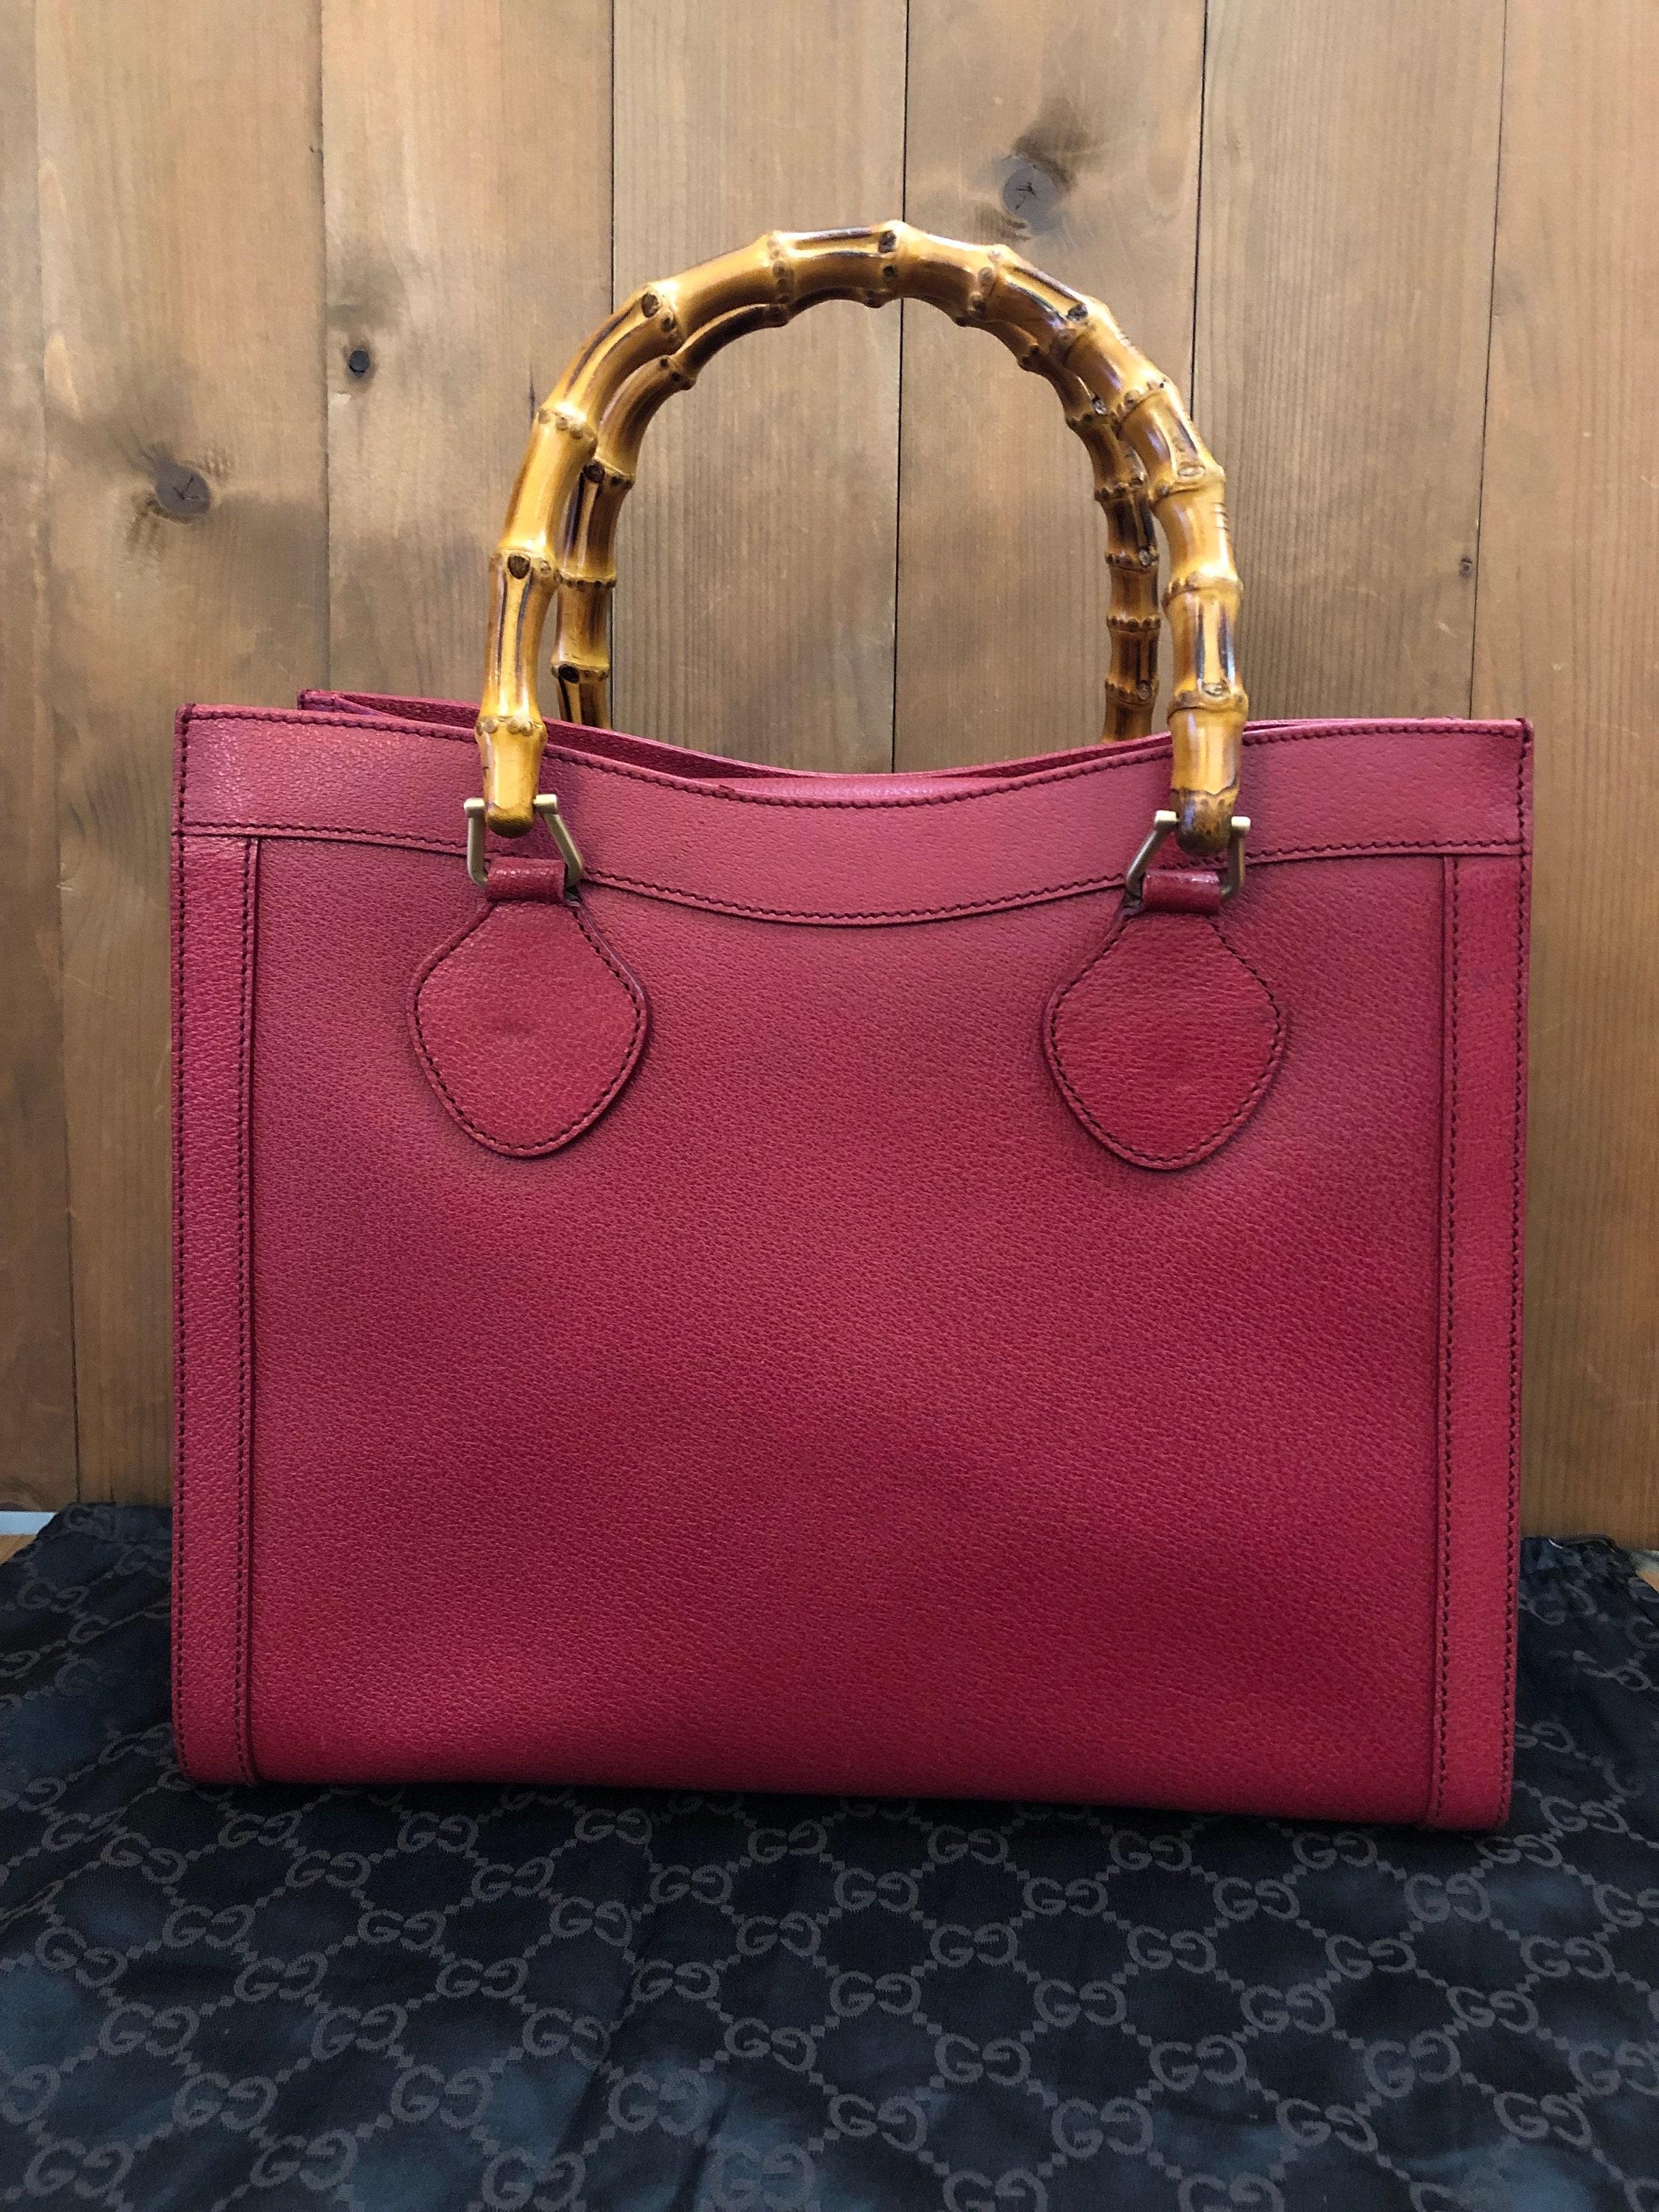 Diese GUCCI Diana Bambus-Tasche im Vintage-Stil ist aus Schweinsleder in dunklem Rosa/Rot und gebürsteter goldfarbener Hardware gefertigt. Der magnetische Schnappverschluss an der Oberseite gibt den Blick frei auf das ikonische